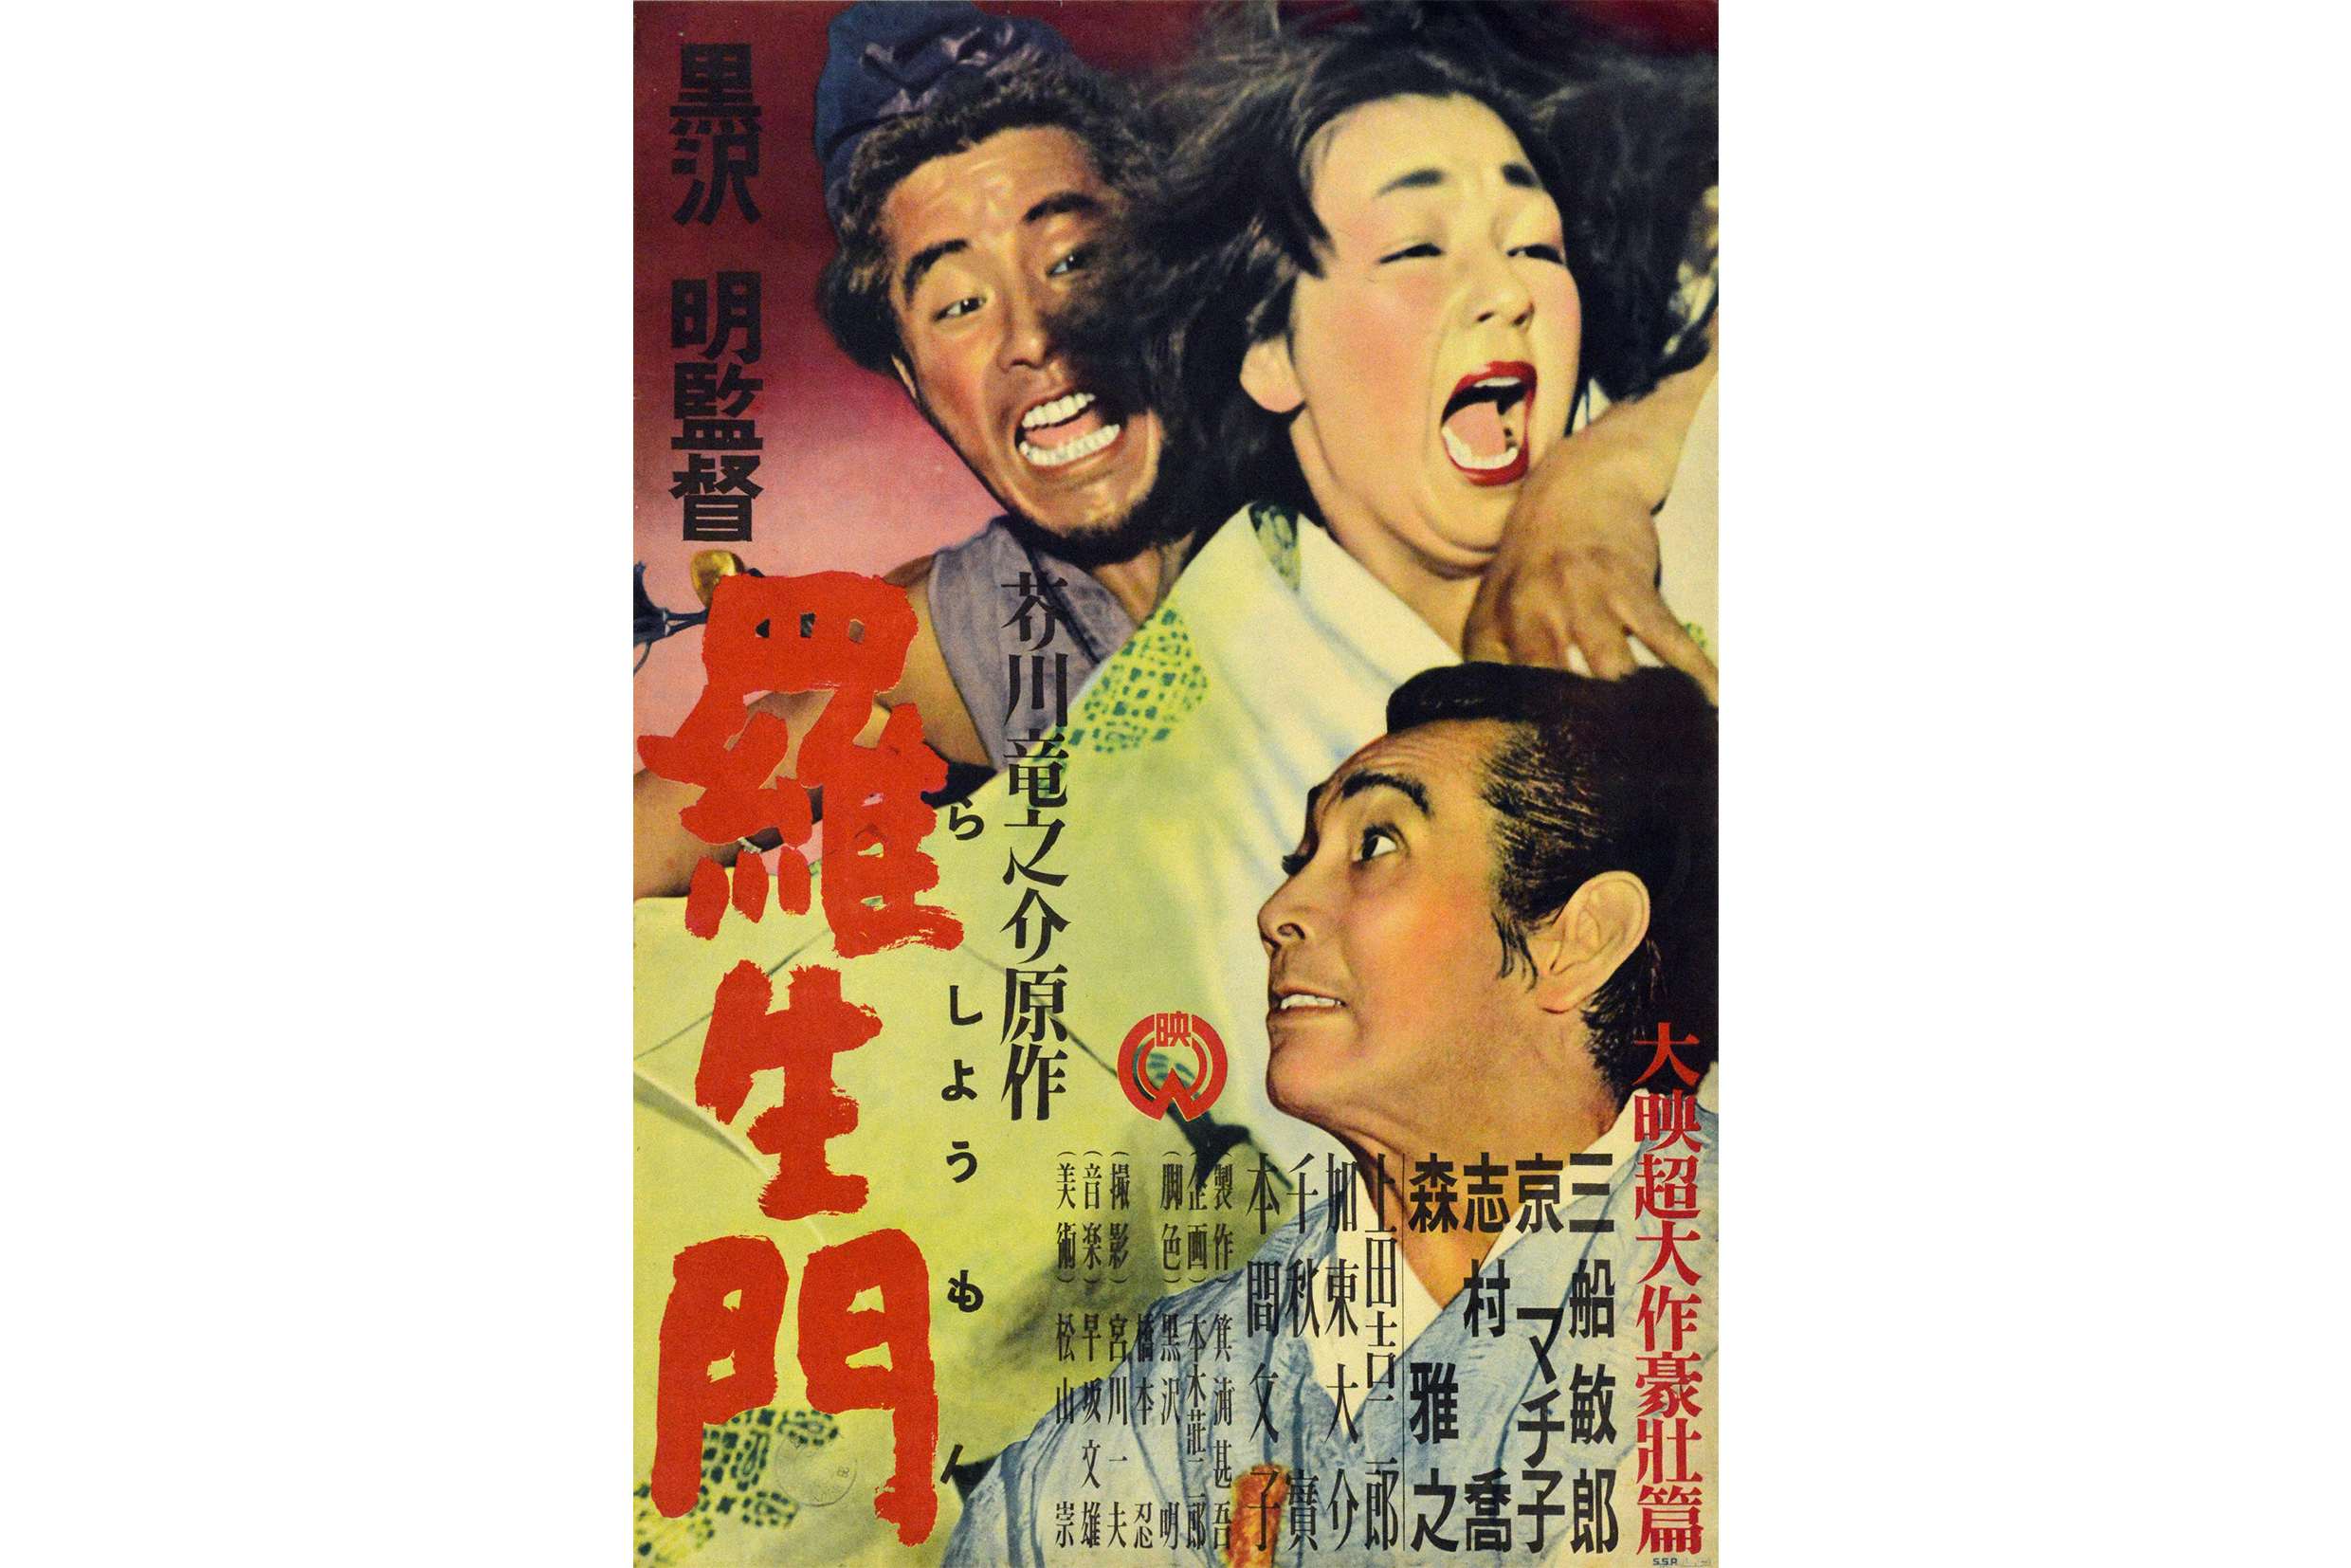 羅生門 映画ポスター 1965年再公開版 黒澤明監督 三船敏郎 京マチ子 